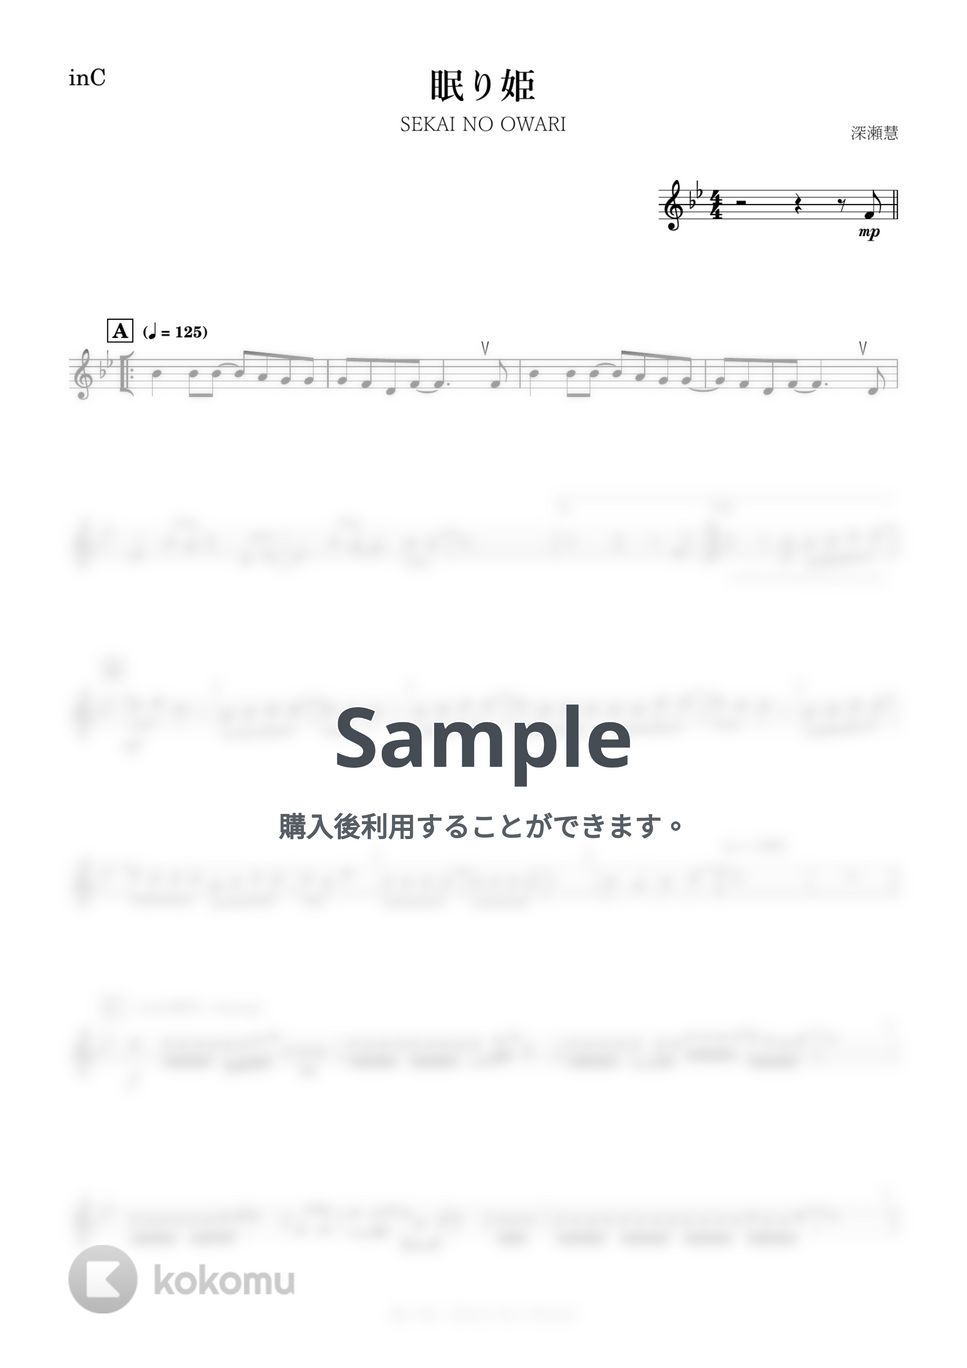 SEKAI NO OWARI - 眠り姫 (C) by kanamusic